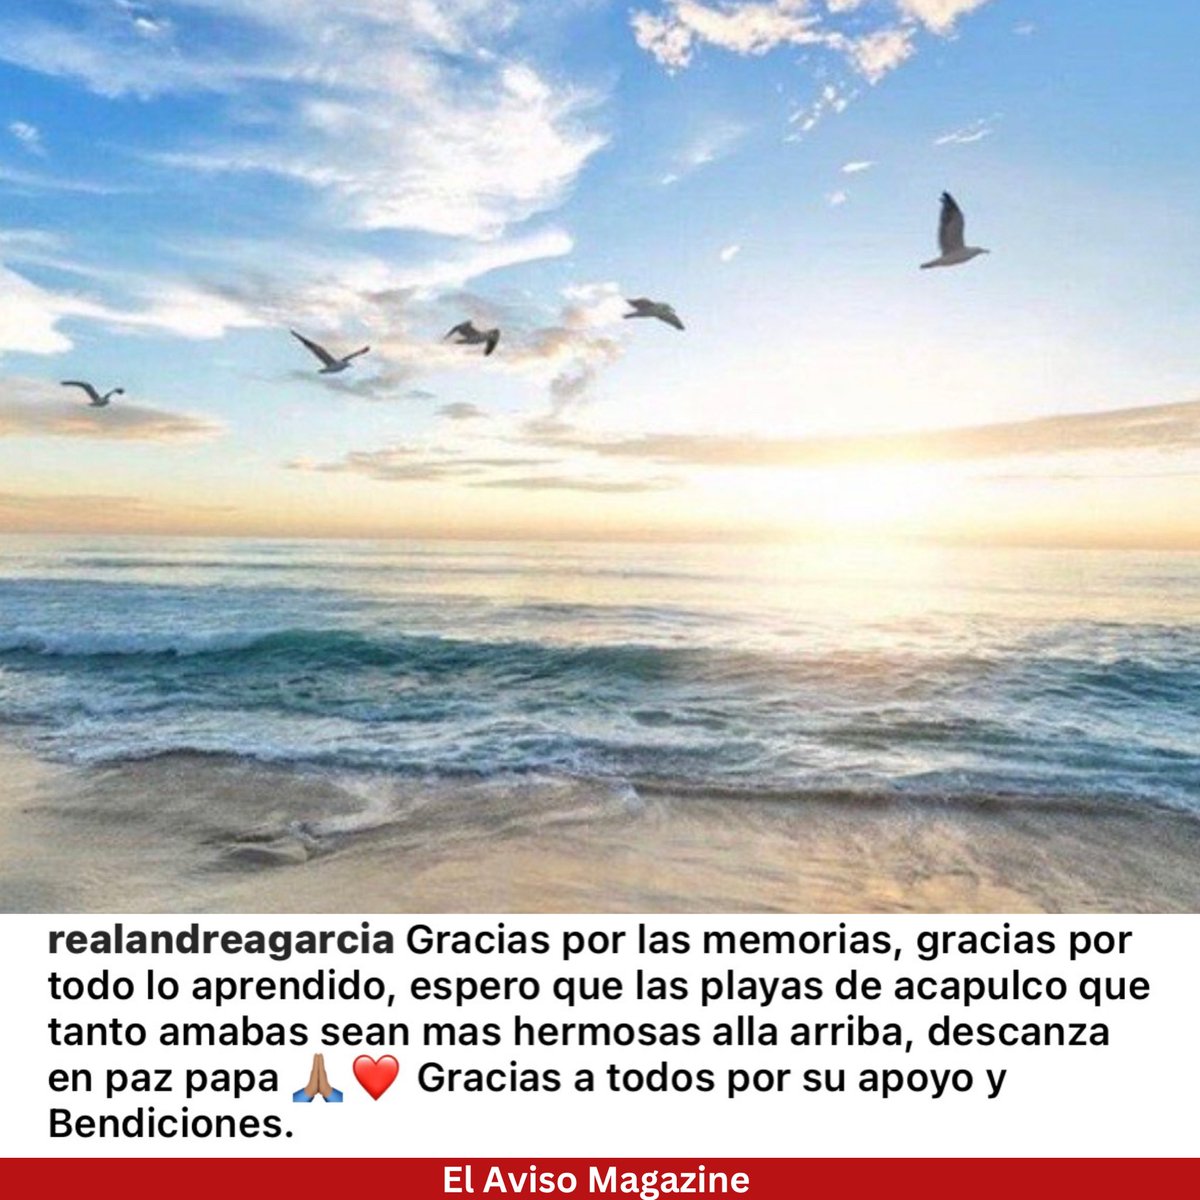 #AndreaGarcia se despide de don #AndresGarcia a través de las redes sociales. 

“ Espero que las playas de Acapulco que tanto amabas sean más hermosas allá arriba, descansa en paz papá 🙏🏽❤️” 
.

#ElAvisoFarandula #ElAvisoNoticias #HijosDeFamosos #AndresGarciaJr #LeonardoGarcia